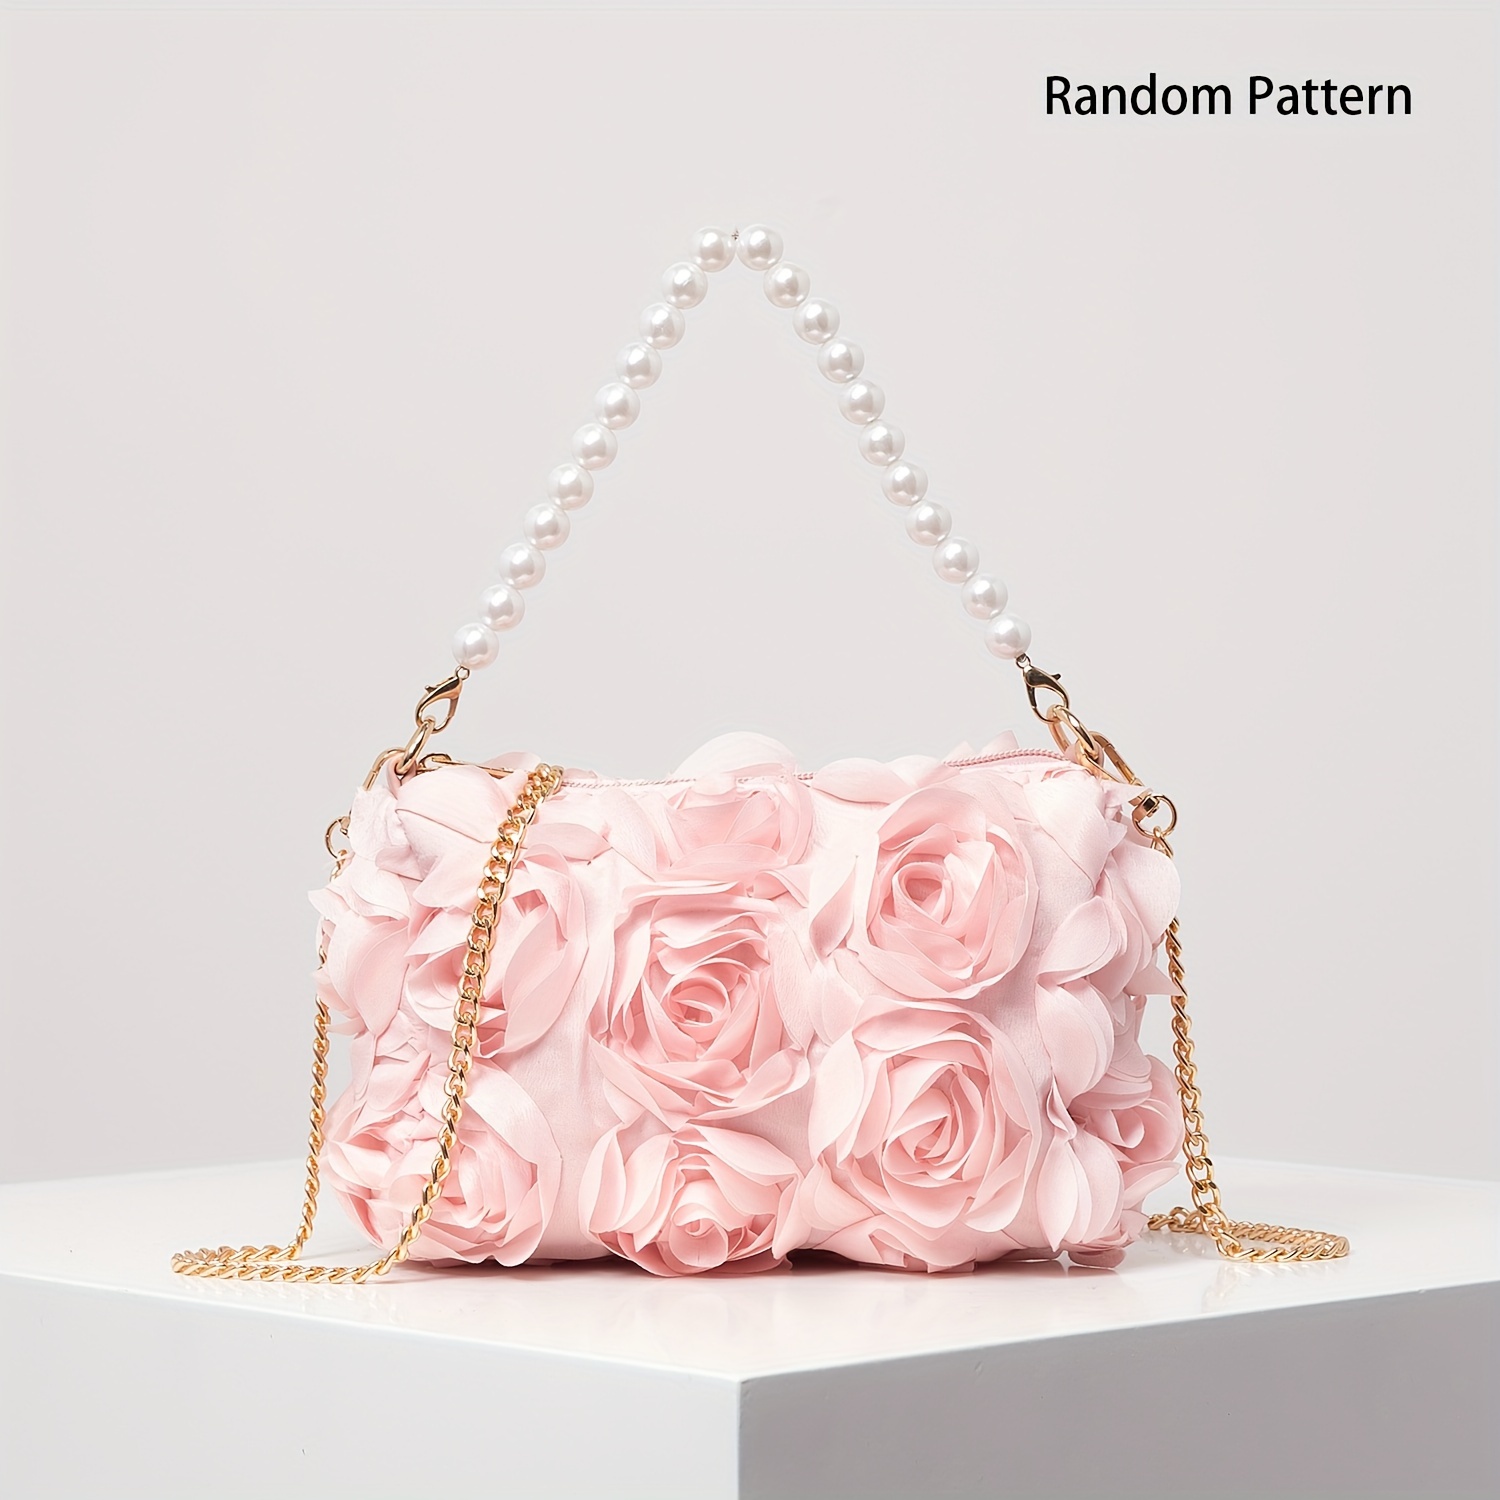 

Elegant Rose Design Shoulder Chain Bag, Sweet Valentine's Day Handbag Wallet With Beads Decor Strap